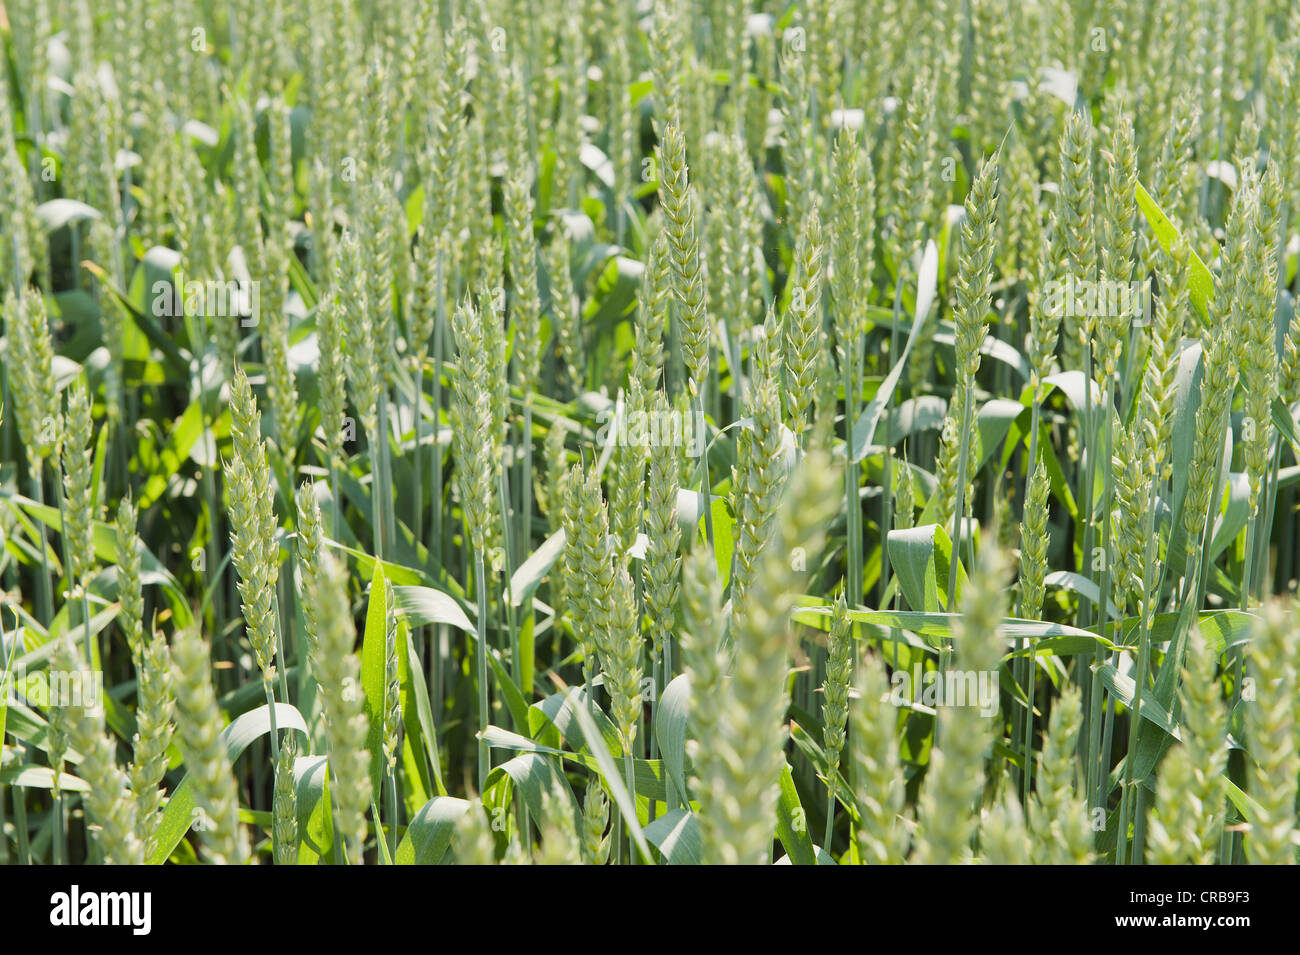 Barley (Hordeum vulgare), grain cultivation in the Hallertau, Holledau or Hollerdau area, Mainburg, Bavaria, Germany, Europe Stock Photo